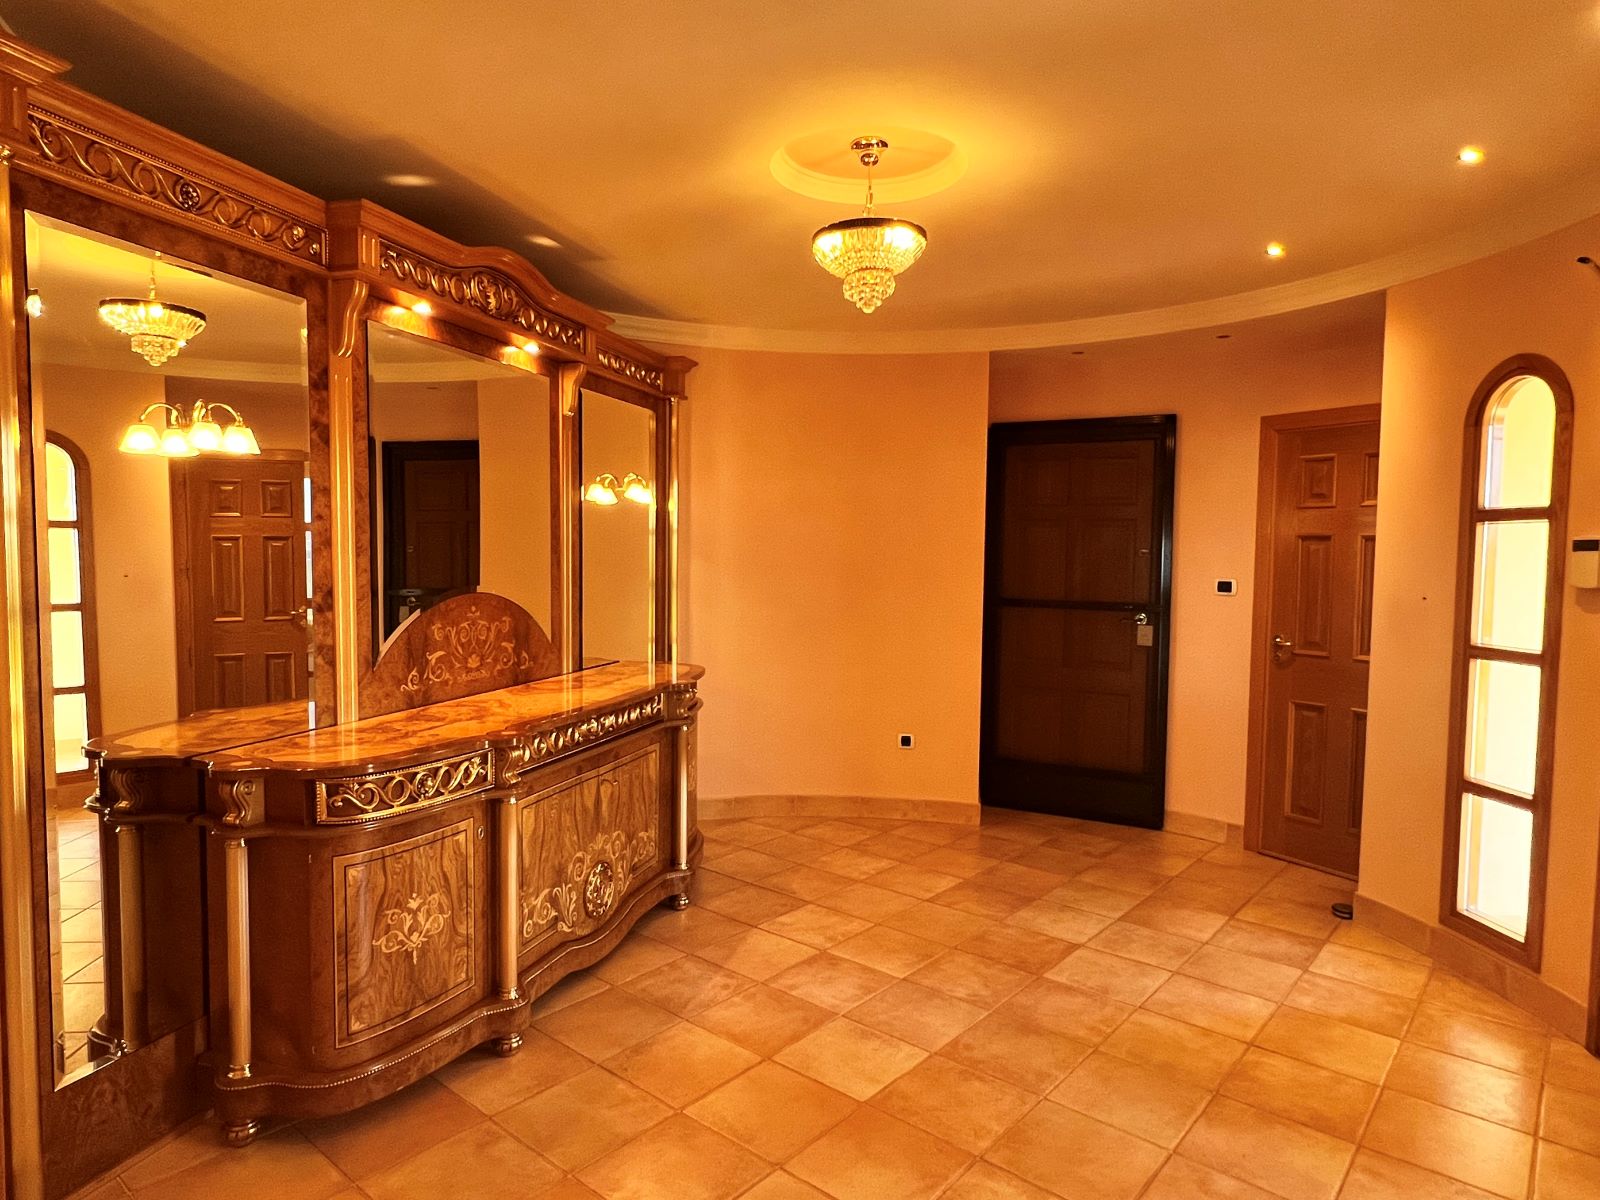 Única y exclusiva mansión de lujo, en tres plantas, en venta en la zona de Calpe-Benissa